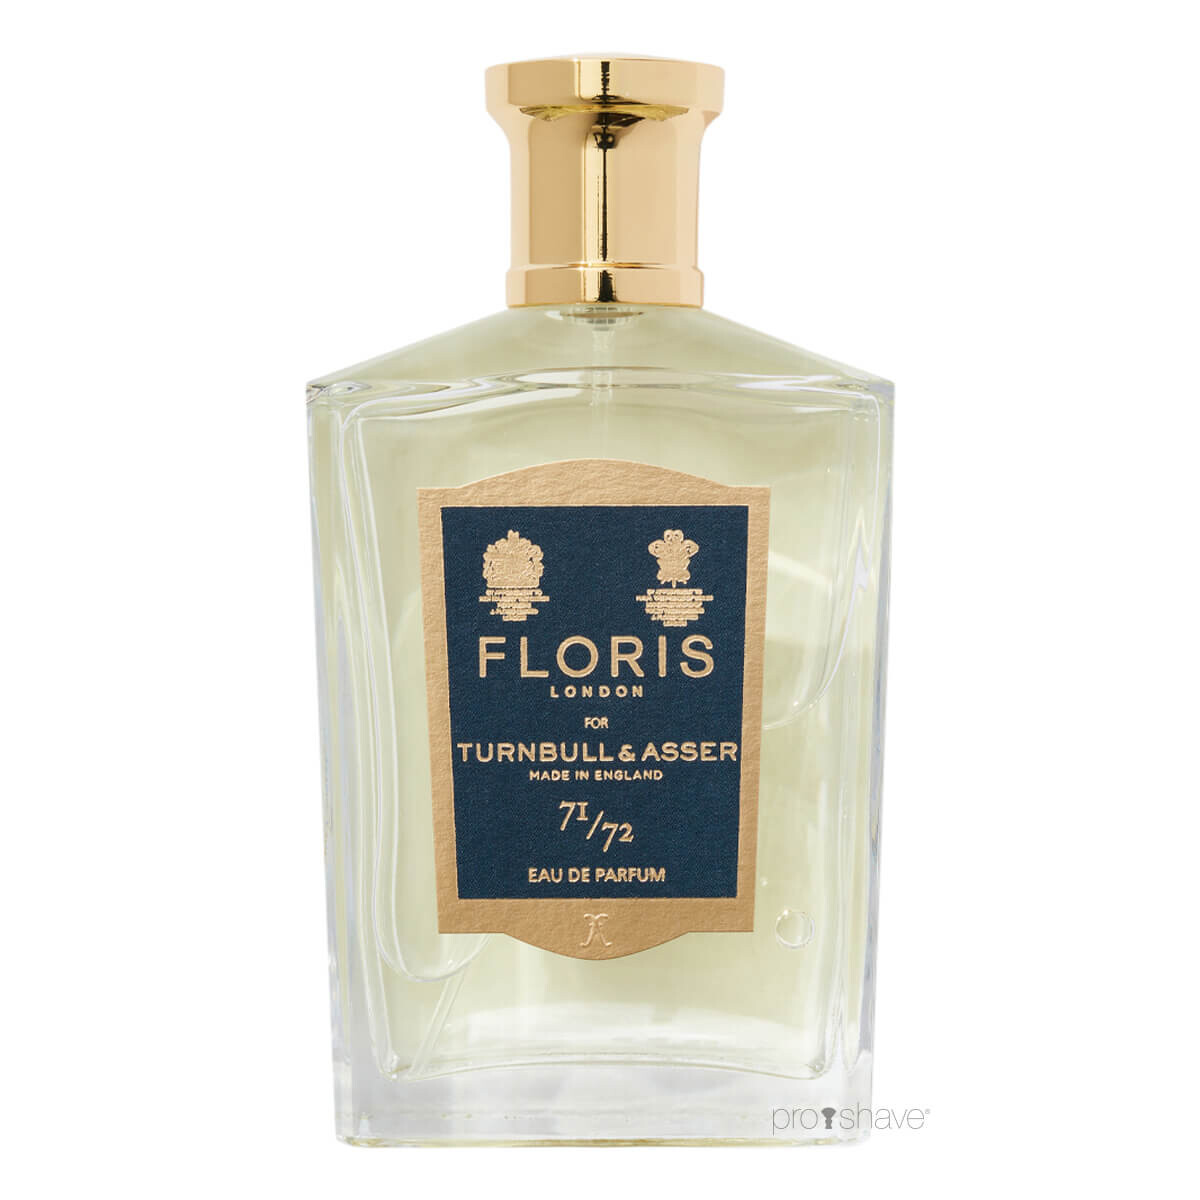 Floris x Turnbull & Asser 71/72, Eau de Parfum, 100 ml.